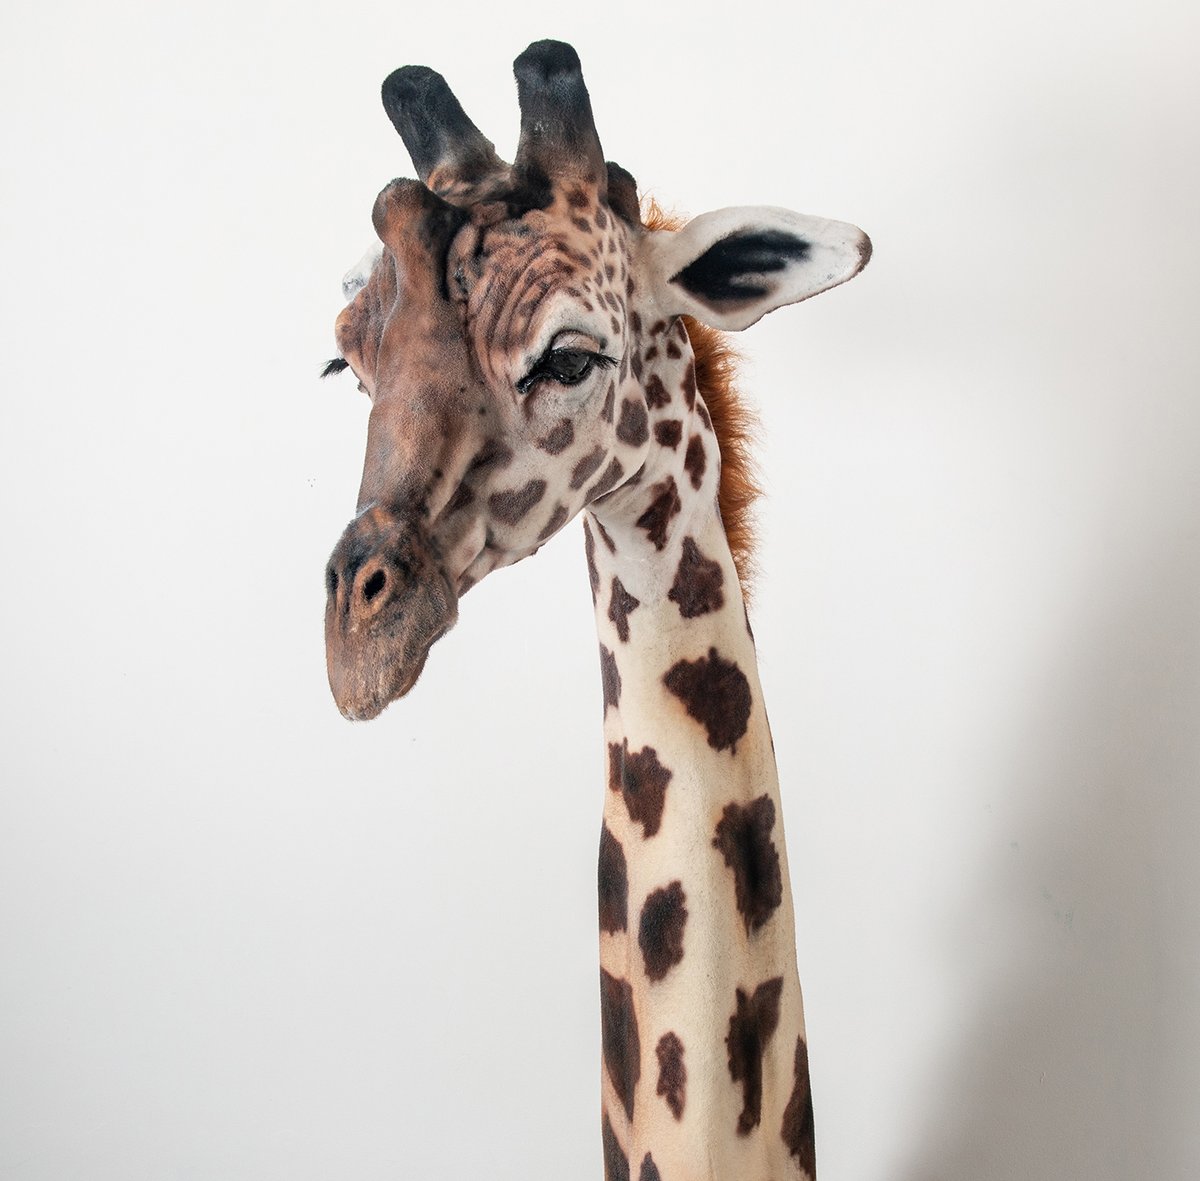 Image of Giraffe Sculpture